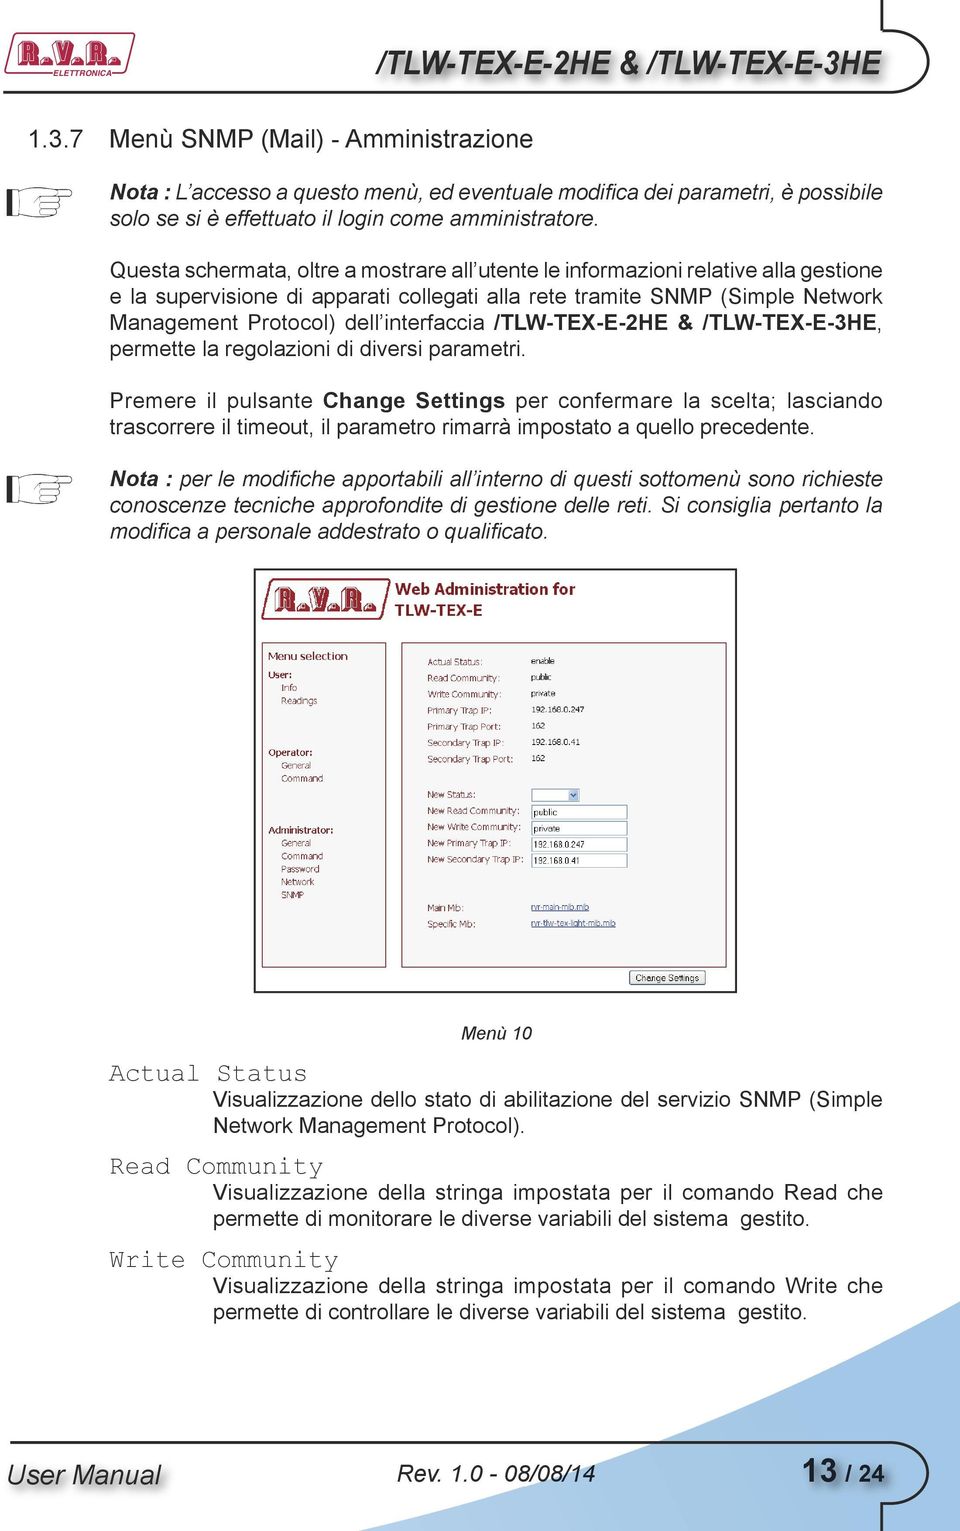 Questa schermata, oltre a mostrare all utente le informazioni relative alla gestione e la supervisione di apparati collegati alla rete tramite SNMP (Simple Network Management Protocol) dell